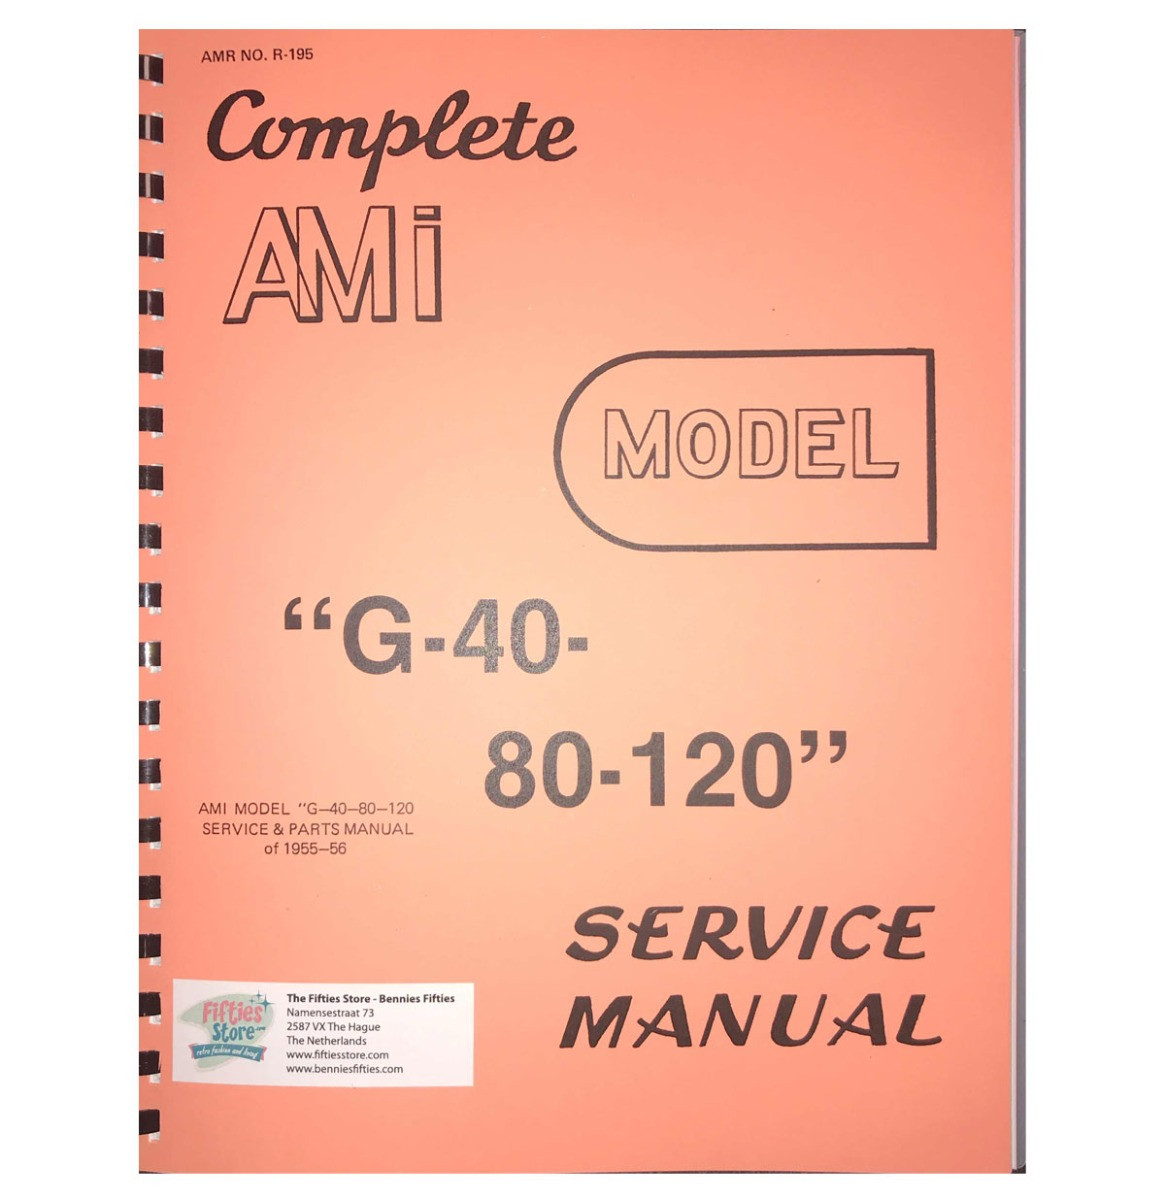 AMI G-40-80-120 Jukebox Service Manual & Parts Catalog